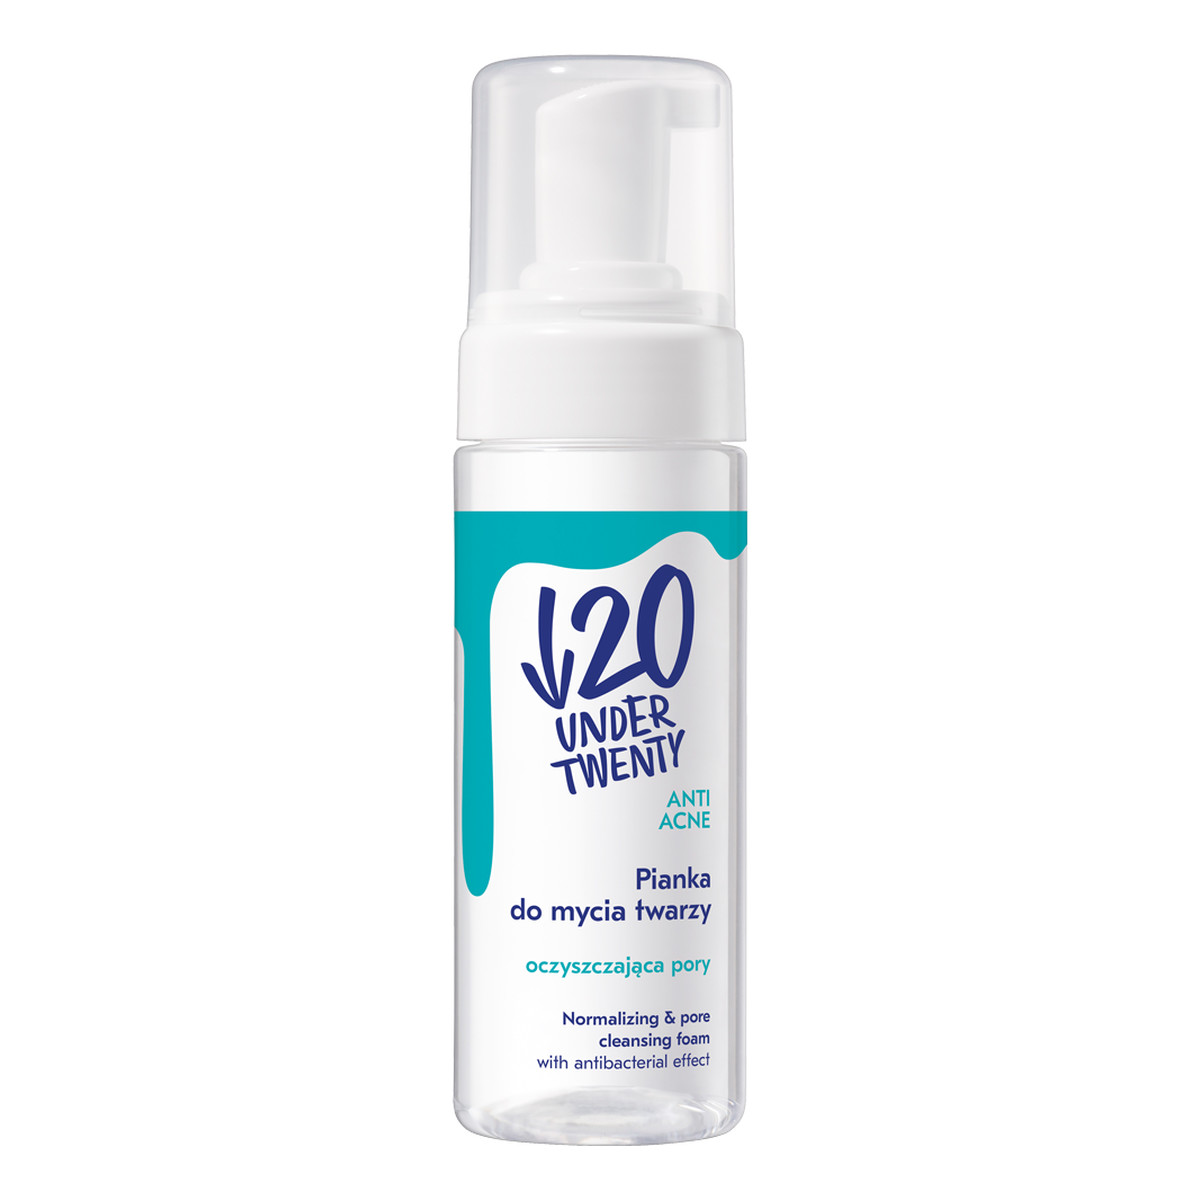 under twenty anti acne pianka oczyszczająca pory do mycia twarzy